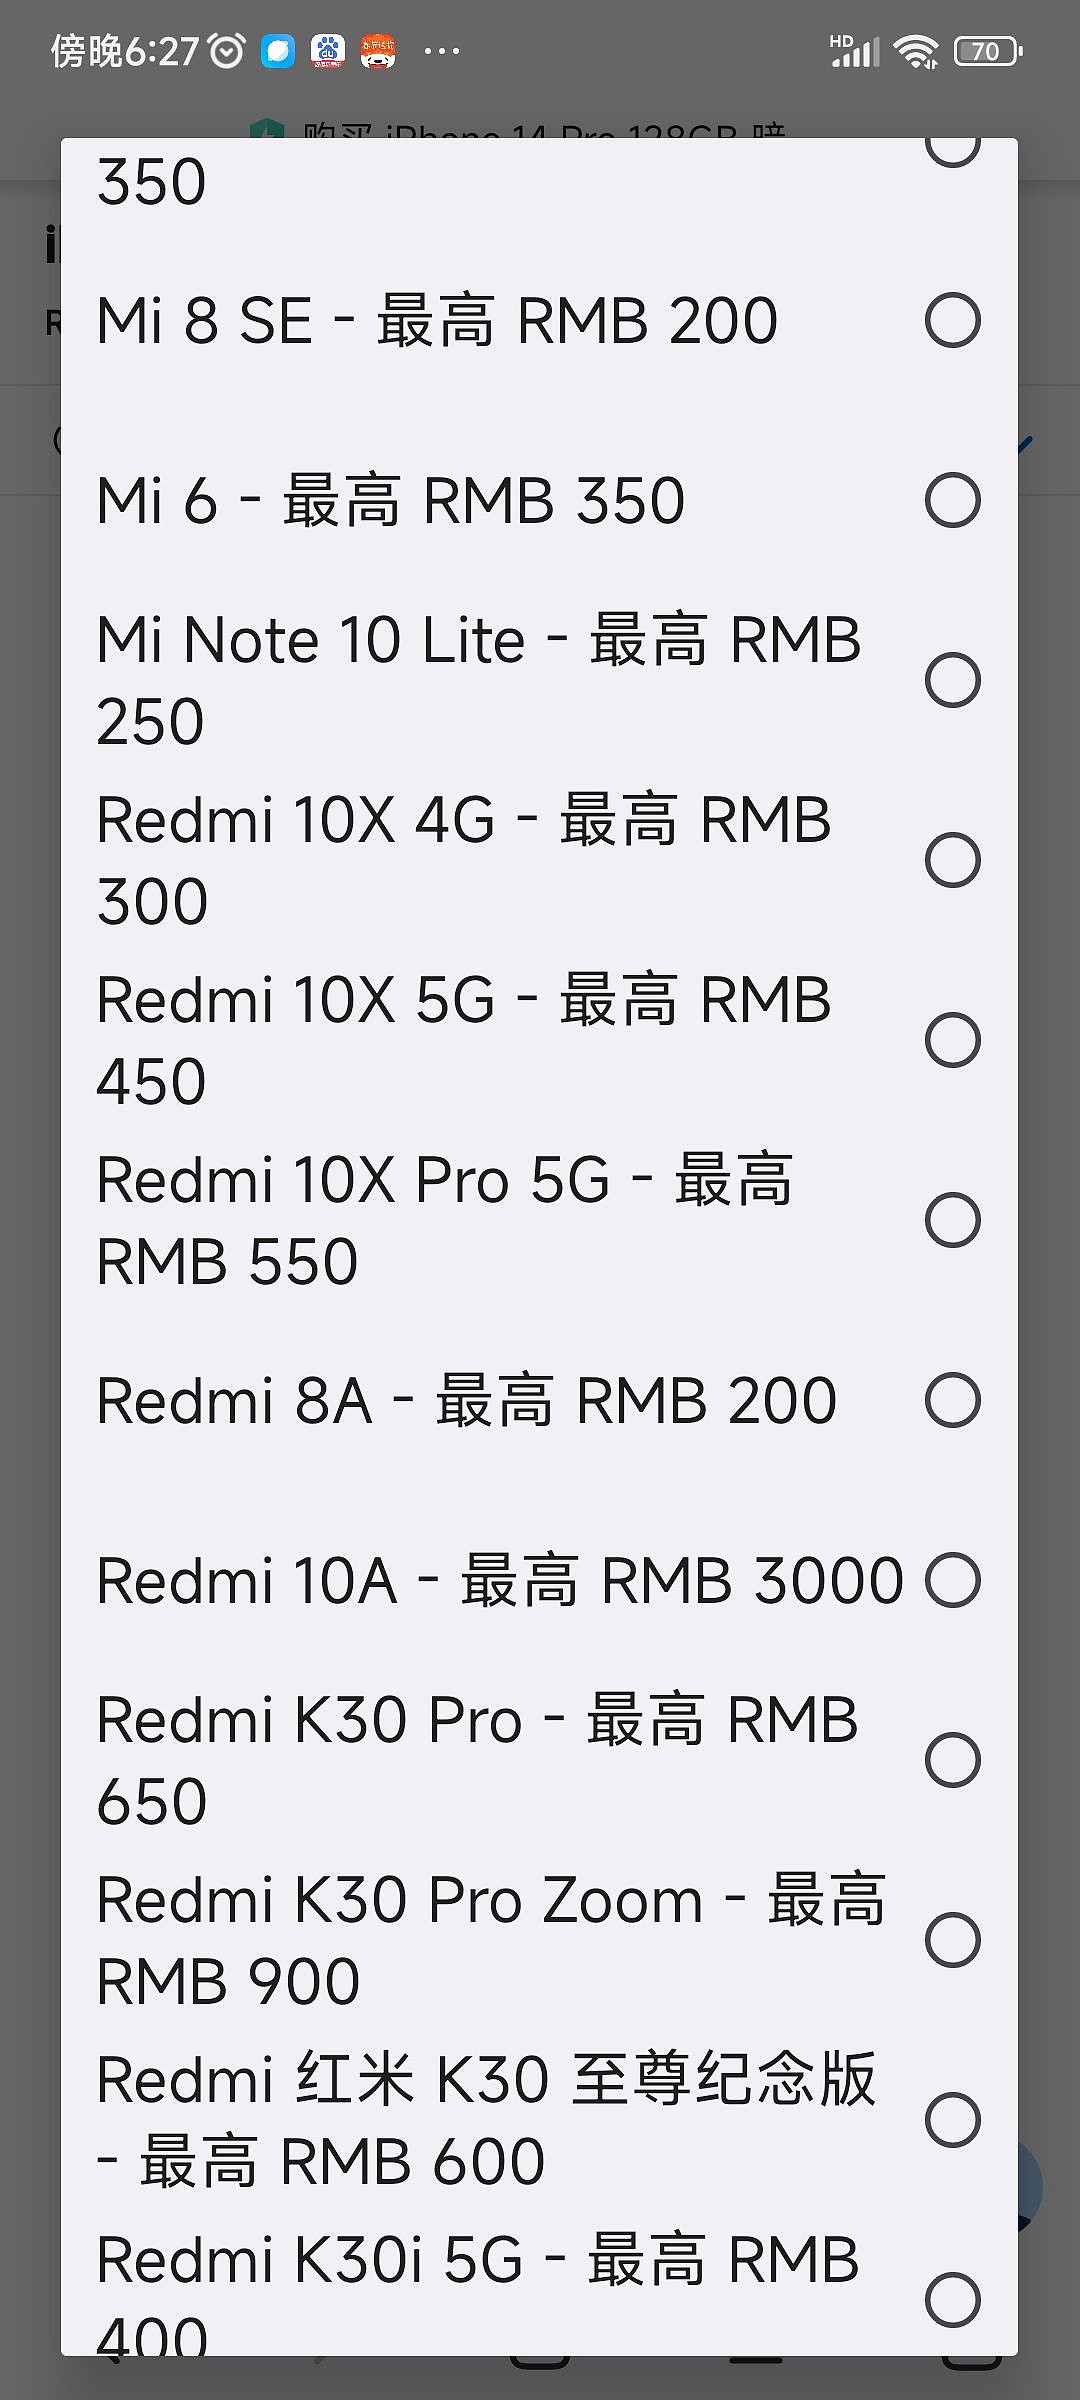 苹果官网换购价格出 Bug，128GB 红米 10A 可折抵 3000 元 - 1